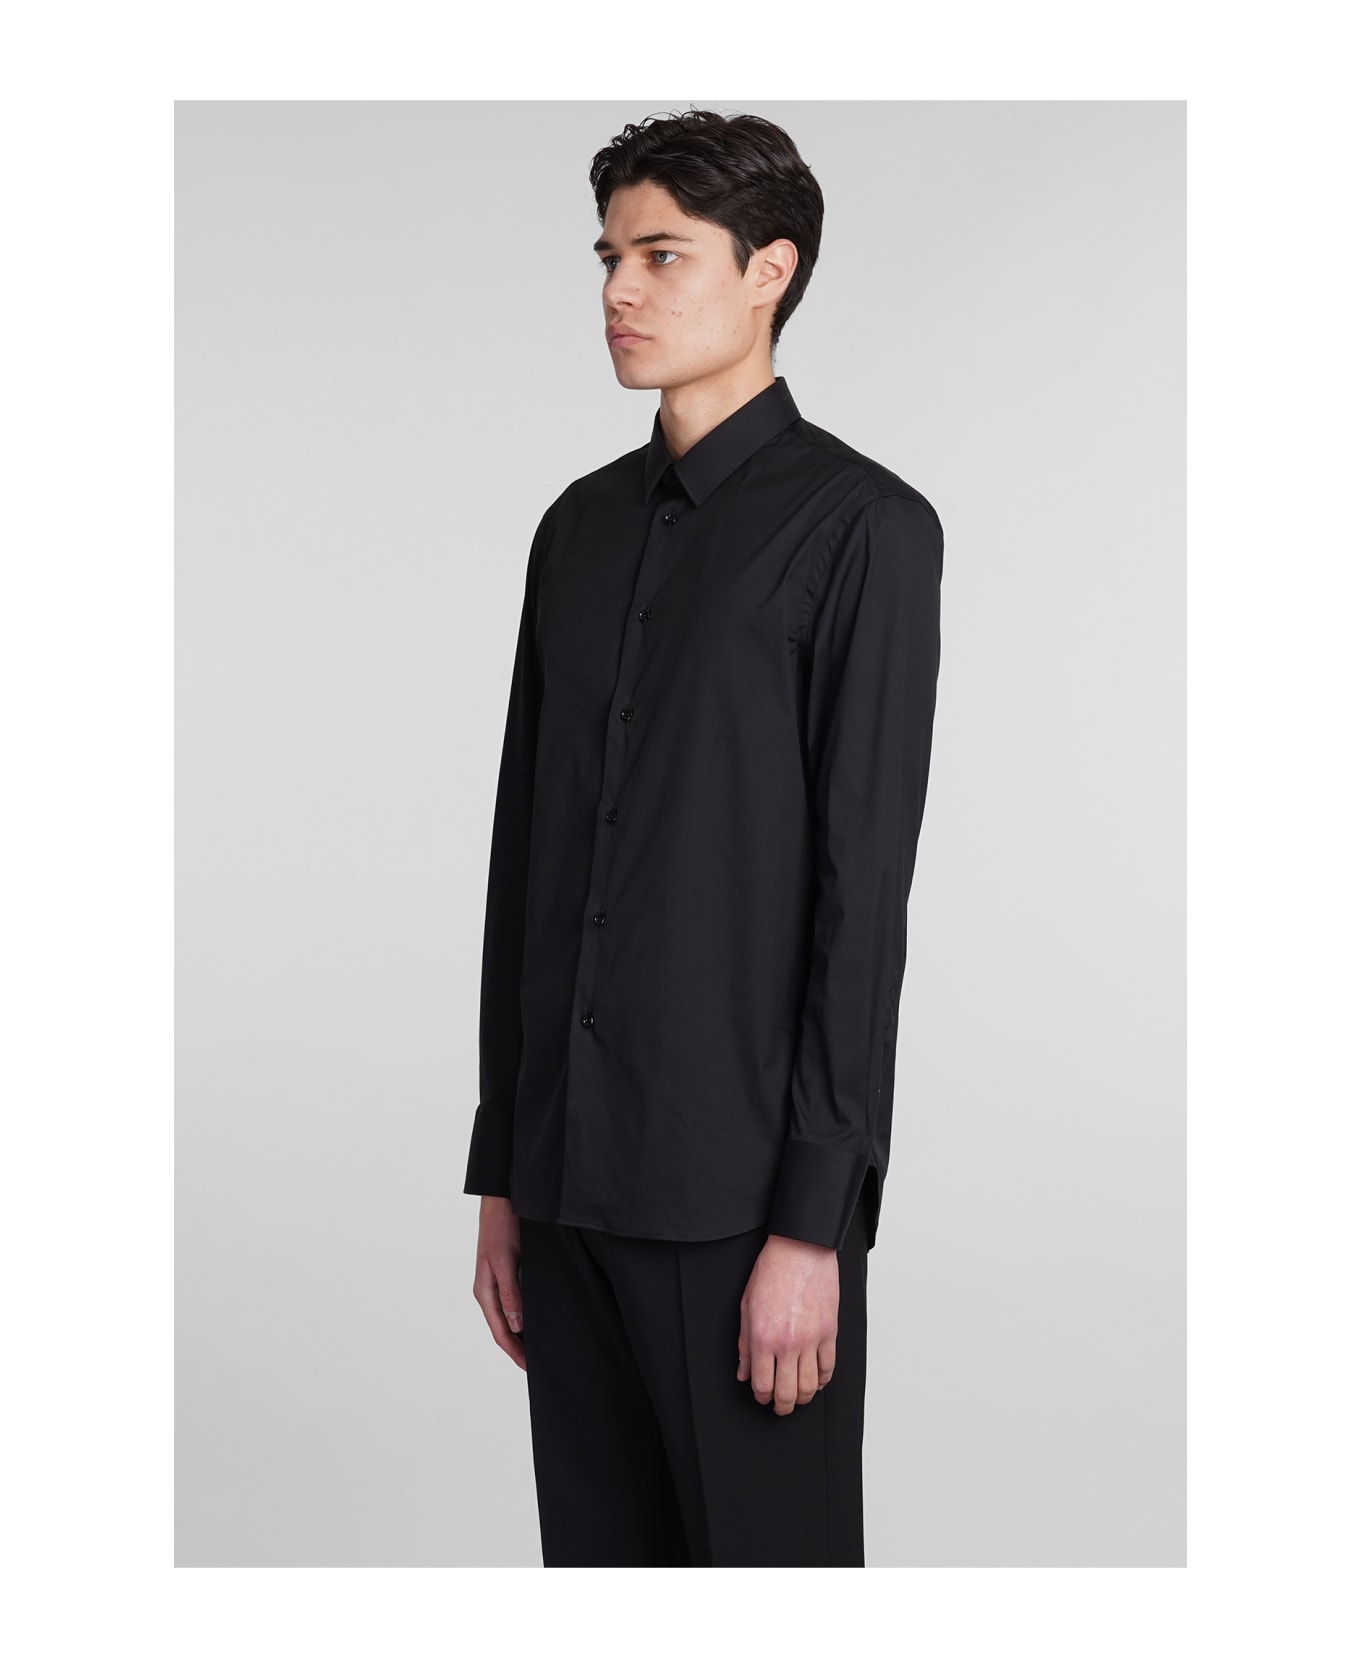 Emporio Armani Shirt In Black Cotton - black